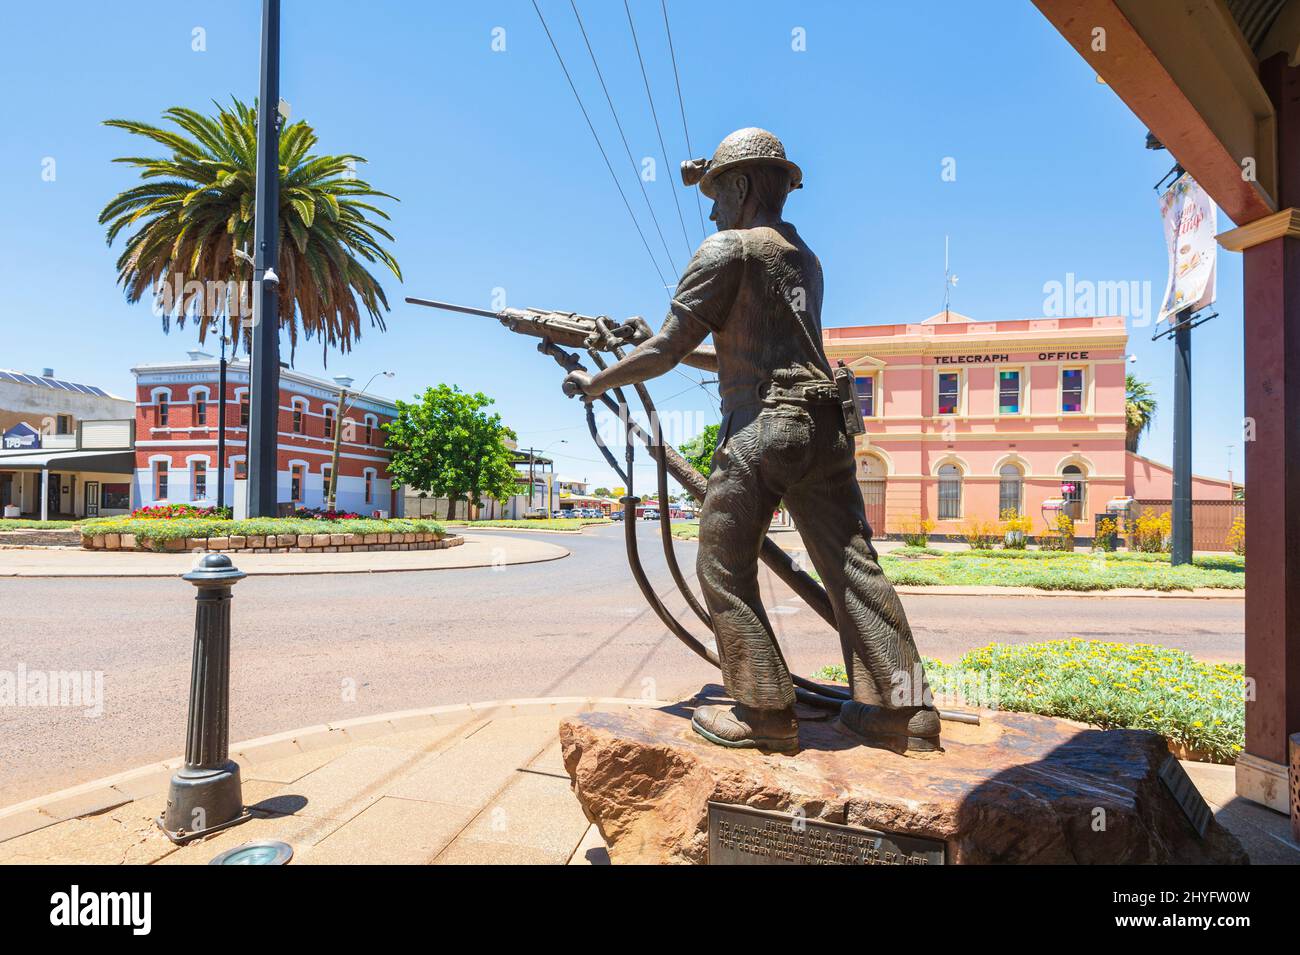 Bronzestatue Memmorial für verstorbene Goldminen, Burt Street, Kalgoorlie Boulder Main Street, Western Australia, WA, Australien Stockfoto